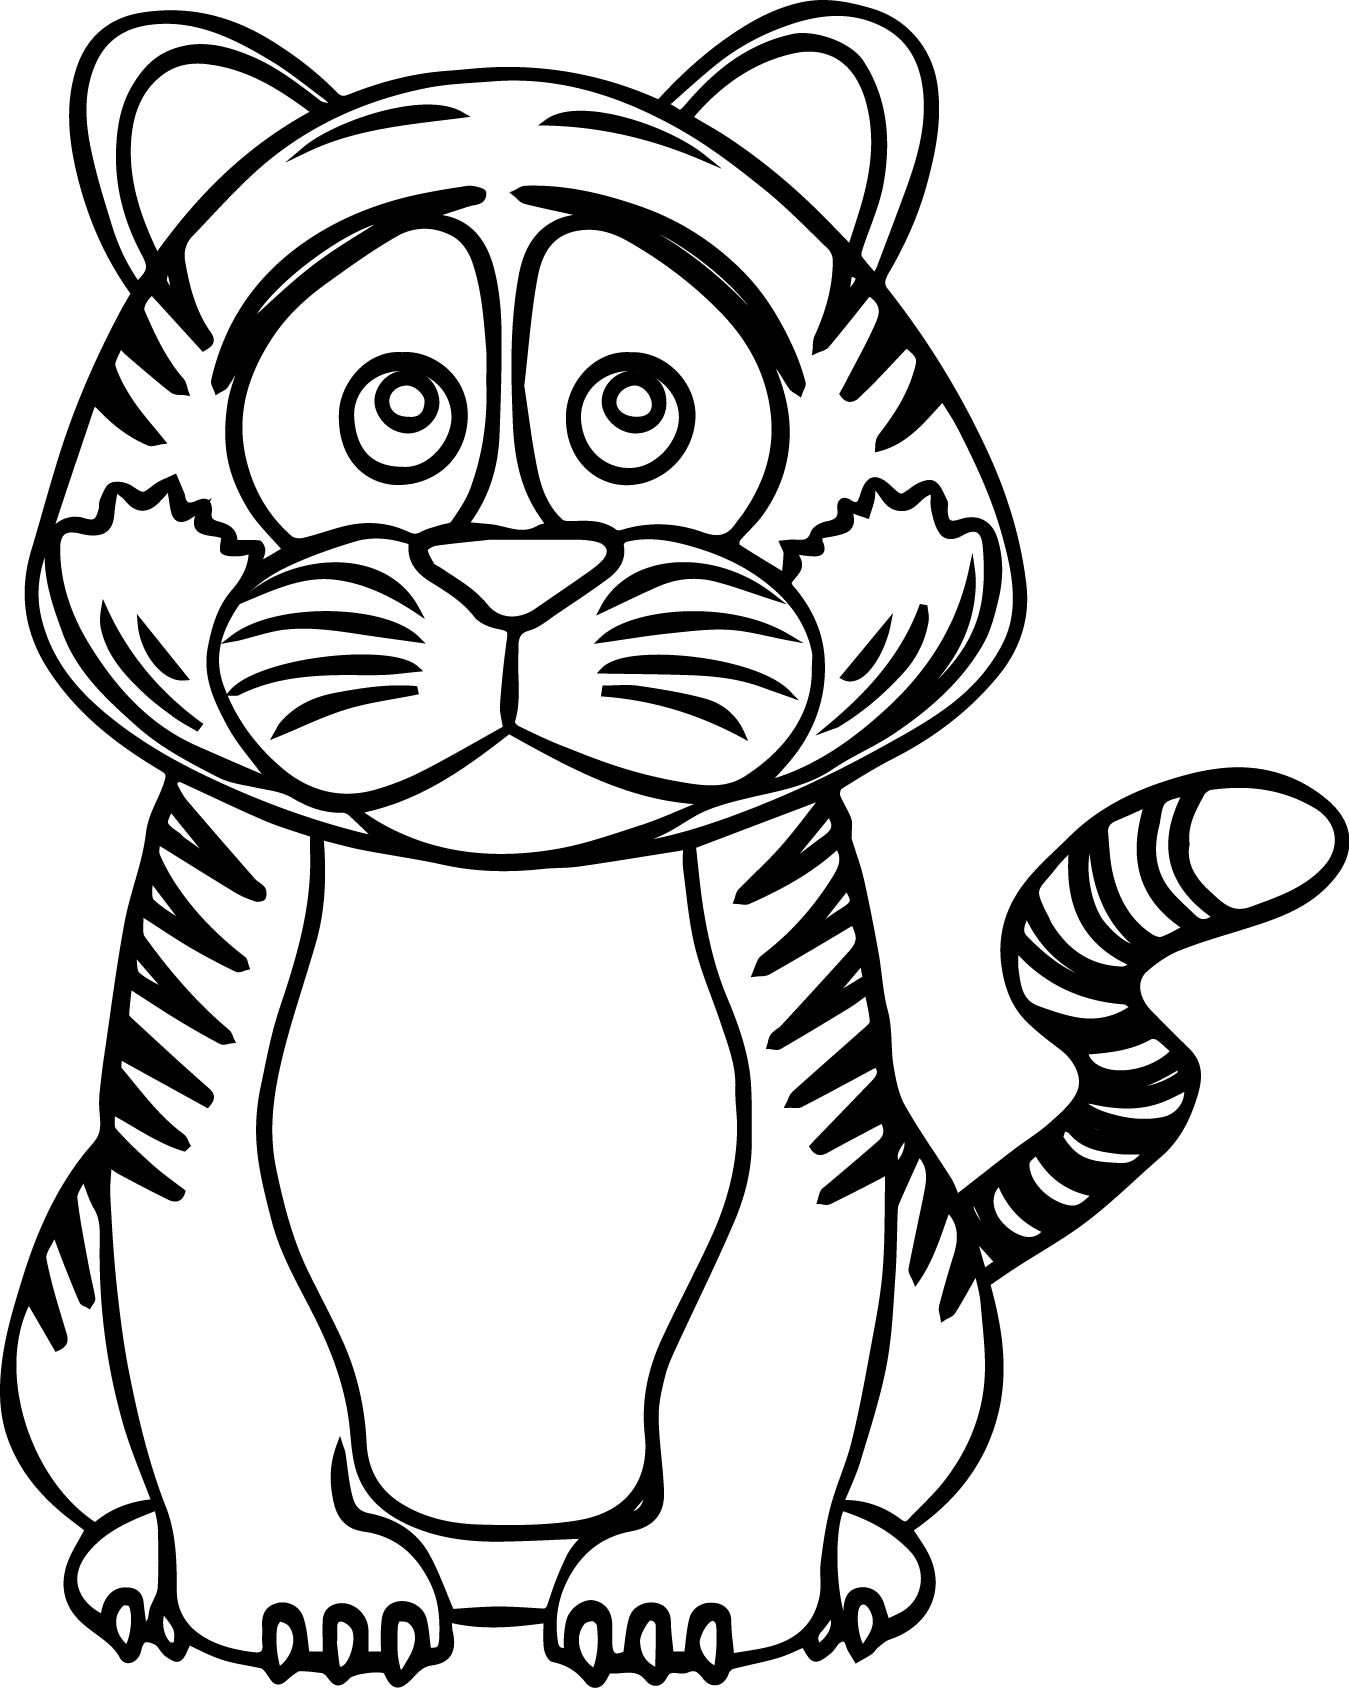 Hình vẽ tranh tô màu con hổ con mập mạp